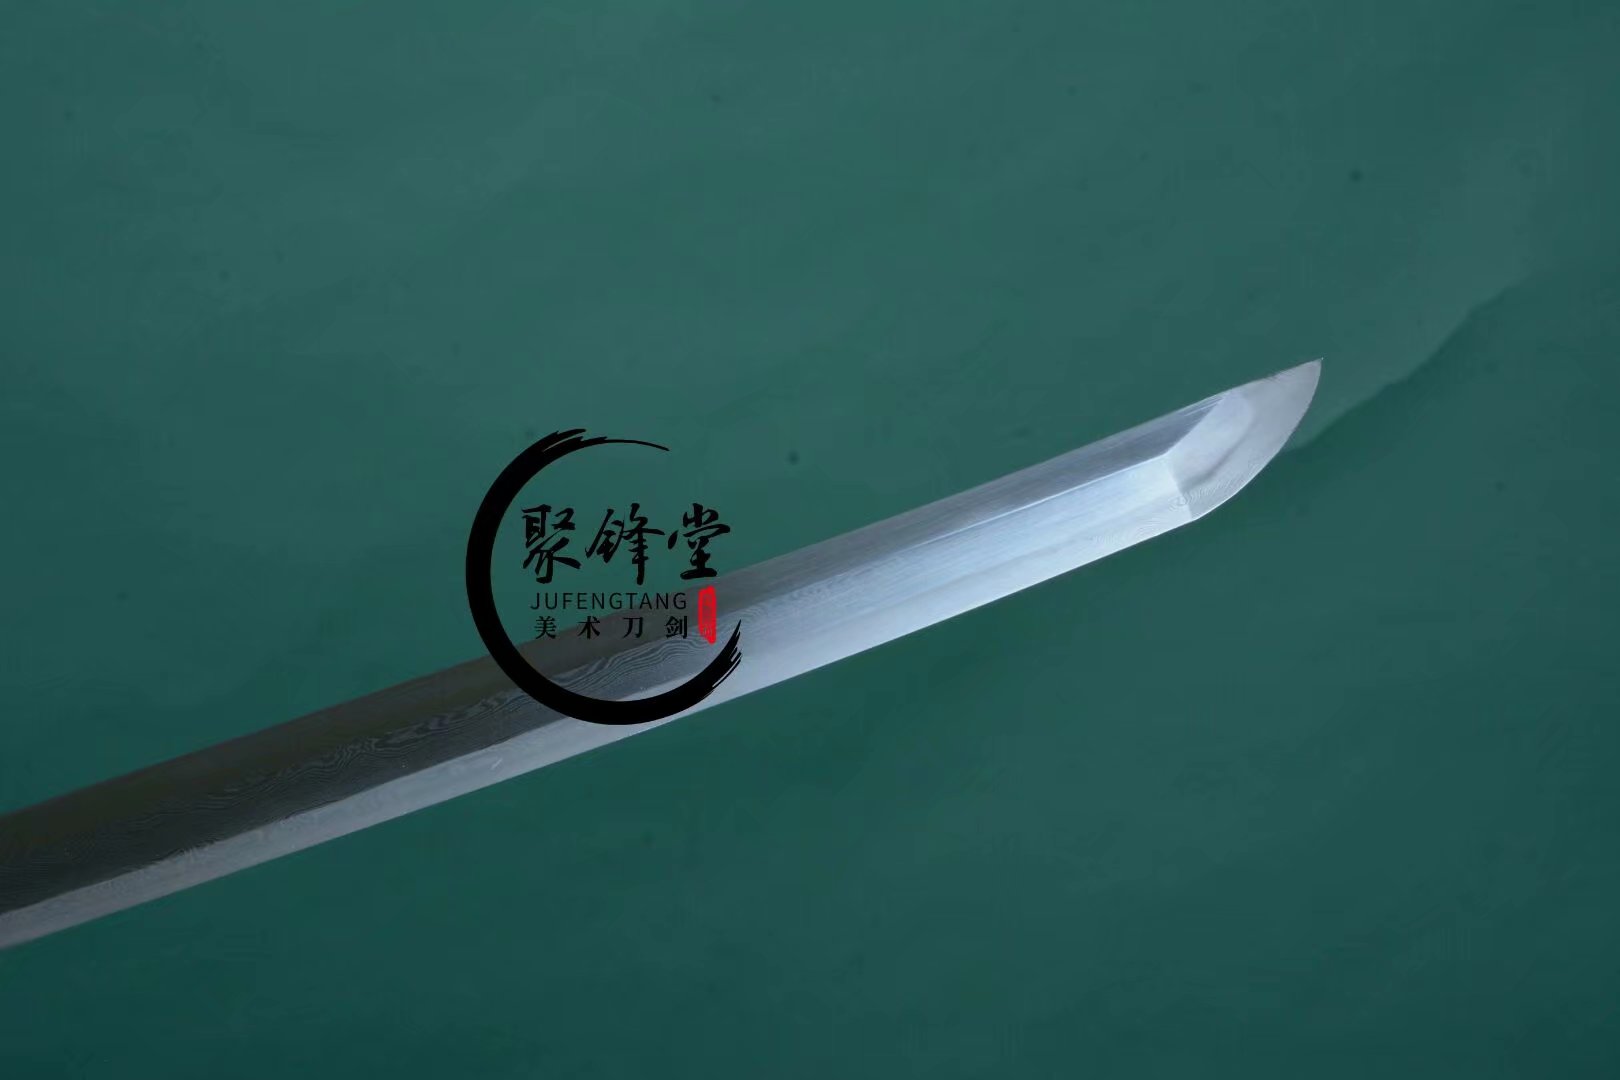 2版本 - 聚锋堂美术刀剑-名刀复刻,日本